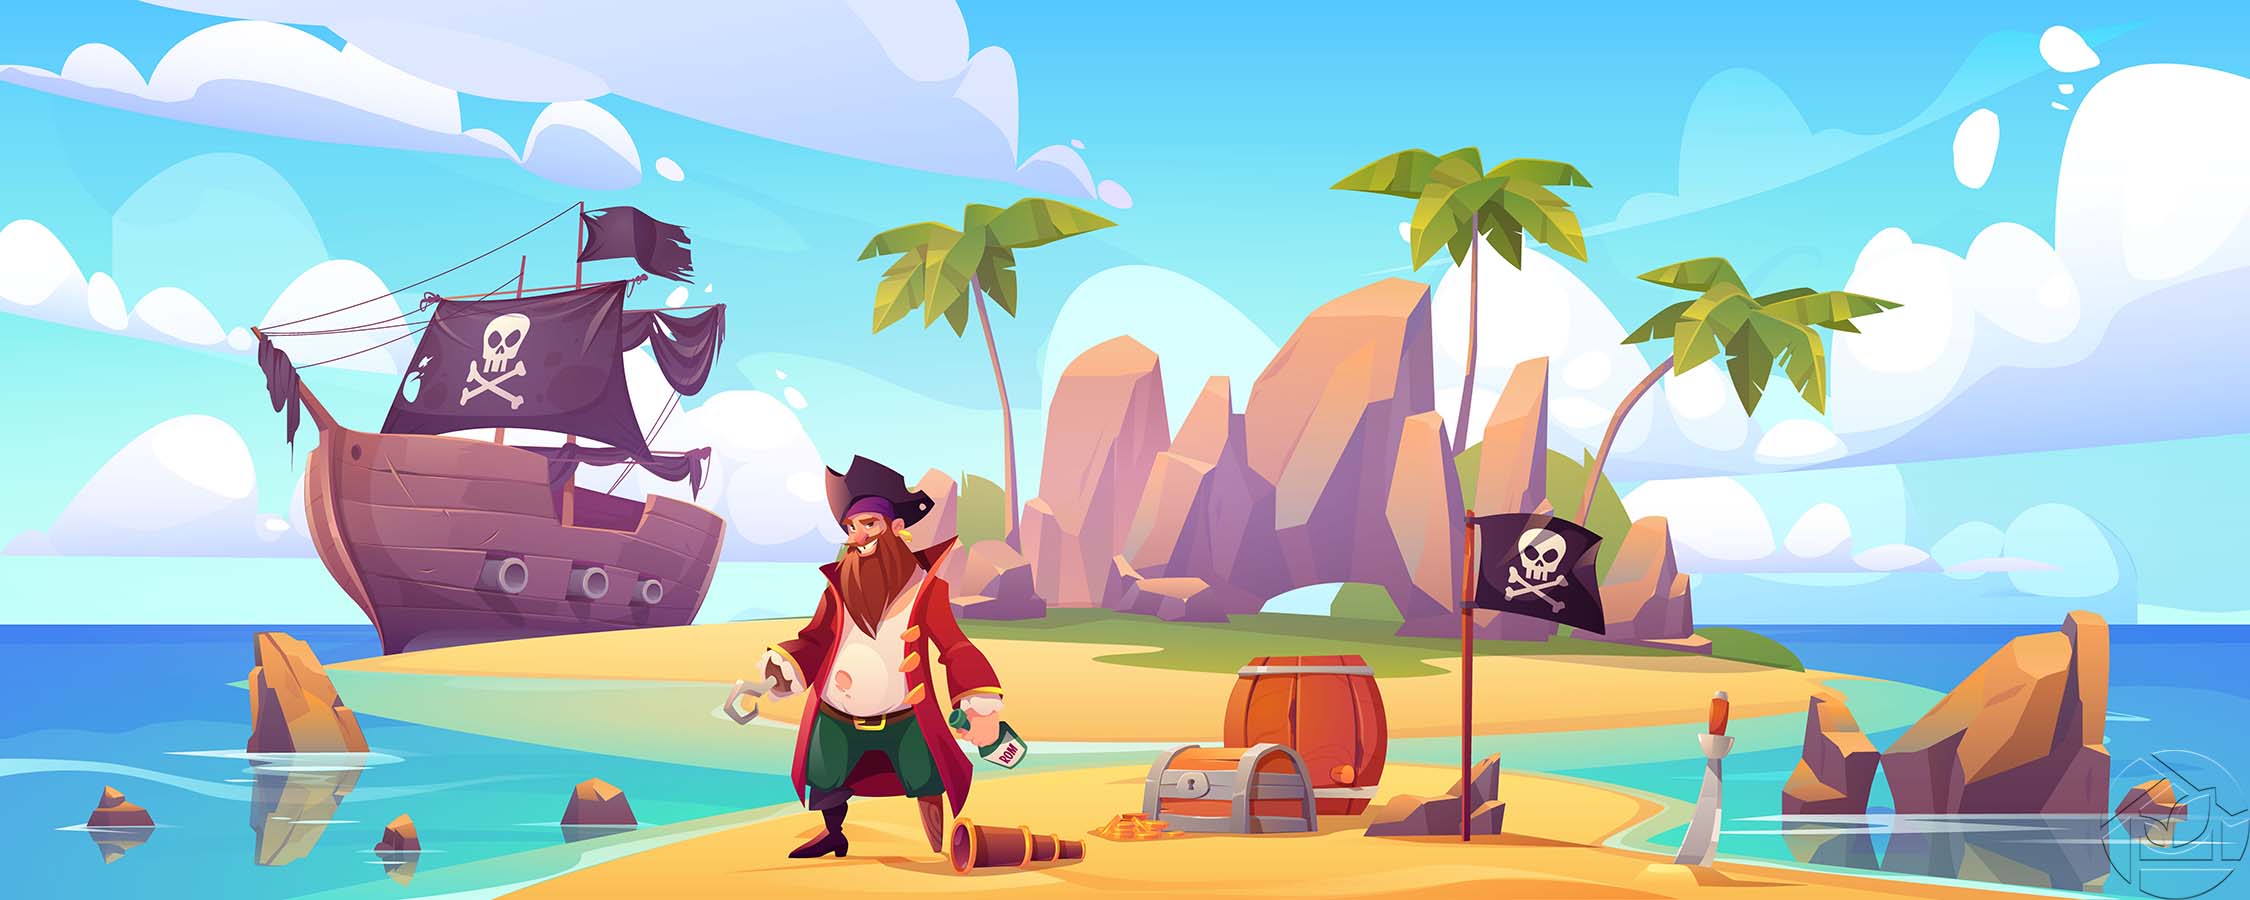 Пираты прячут сокровища на острове